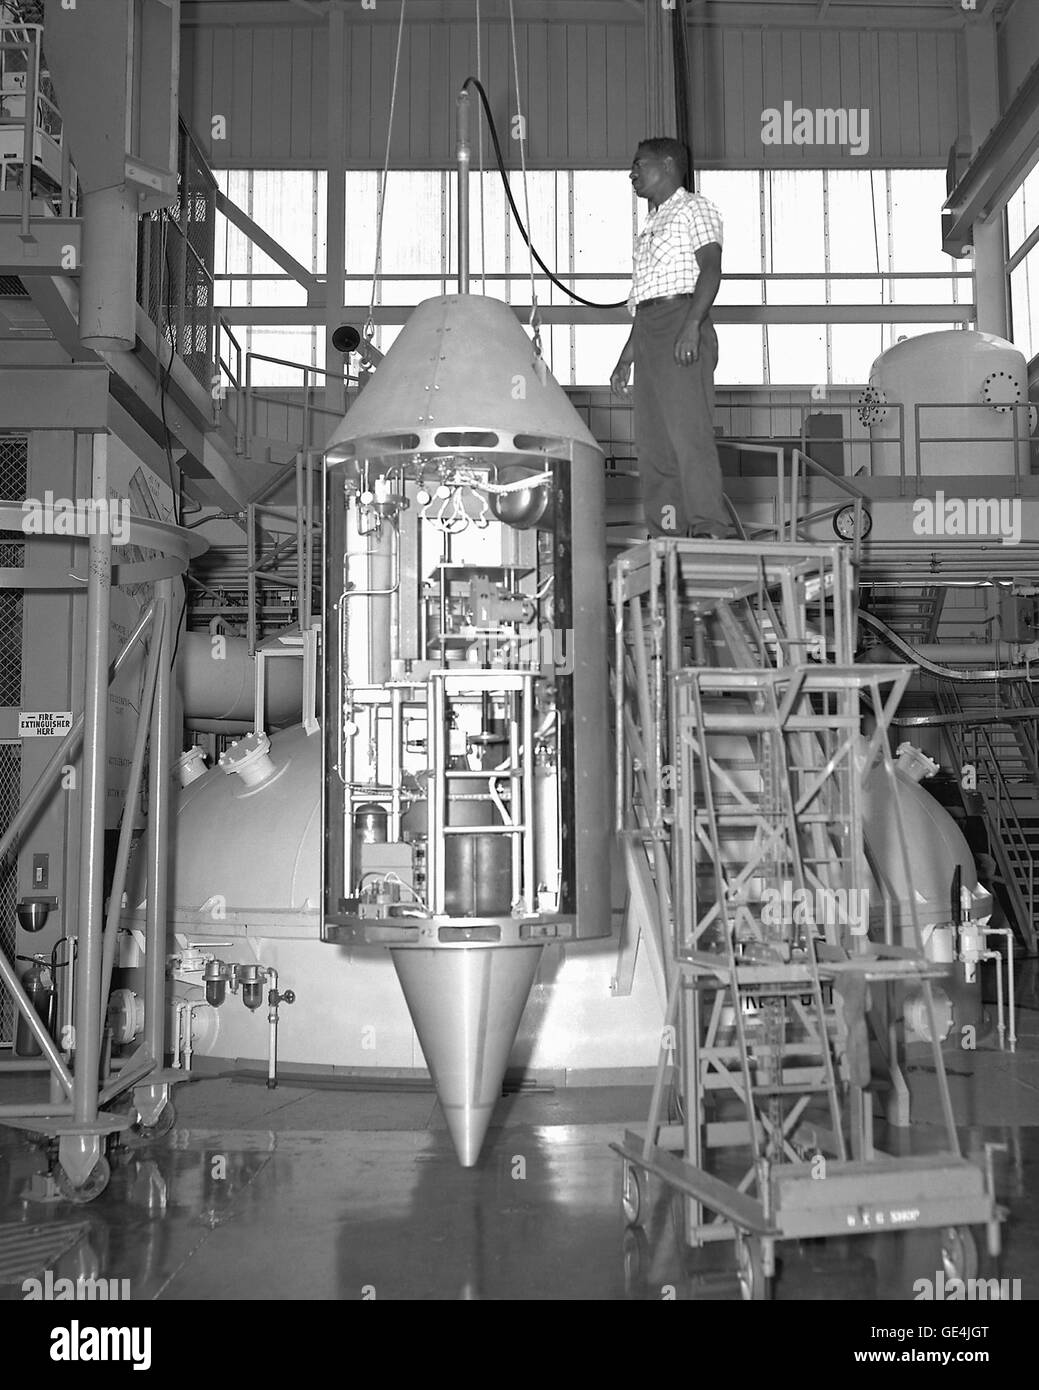 (2 agosto 1967) Zero-g edificio payload presso lo spazio laboratorio esperimenti al Lewis Research Center, ora noto come John H. Glenn Research Center il 2 agosto 1967. Immagine # : C1967-2700 Foto Stock